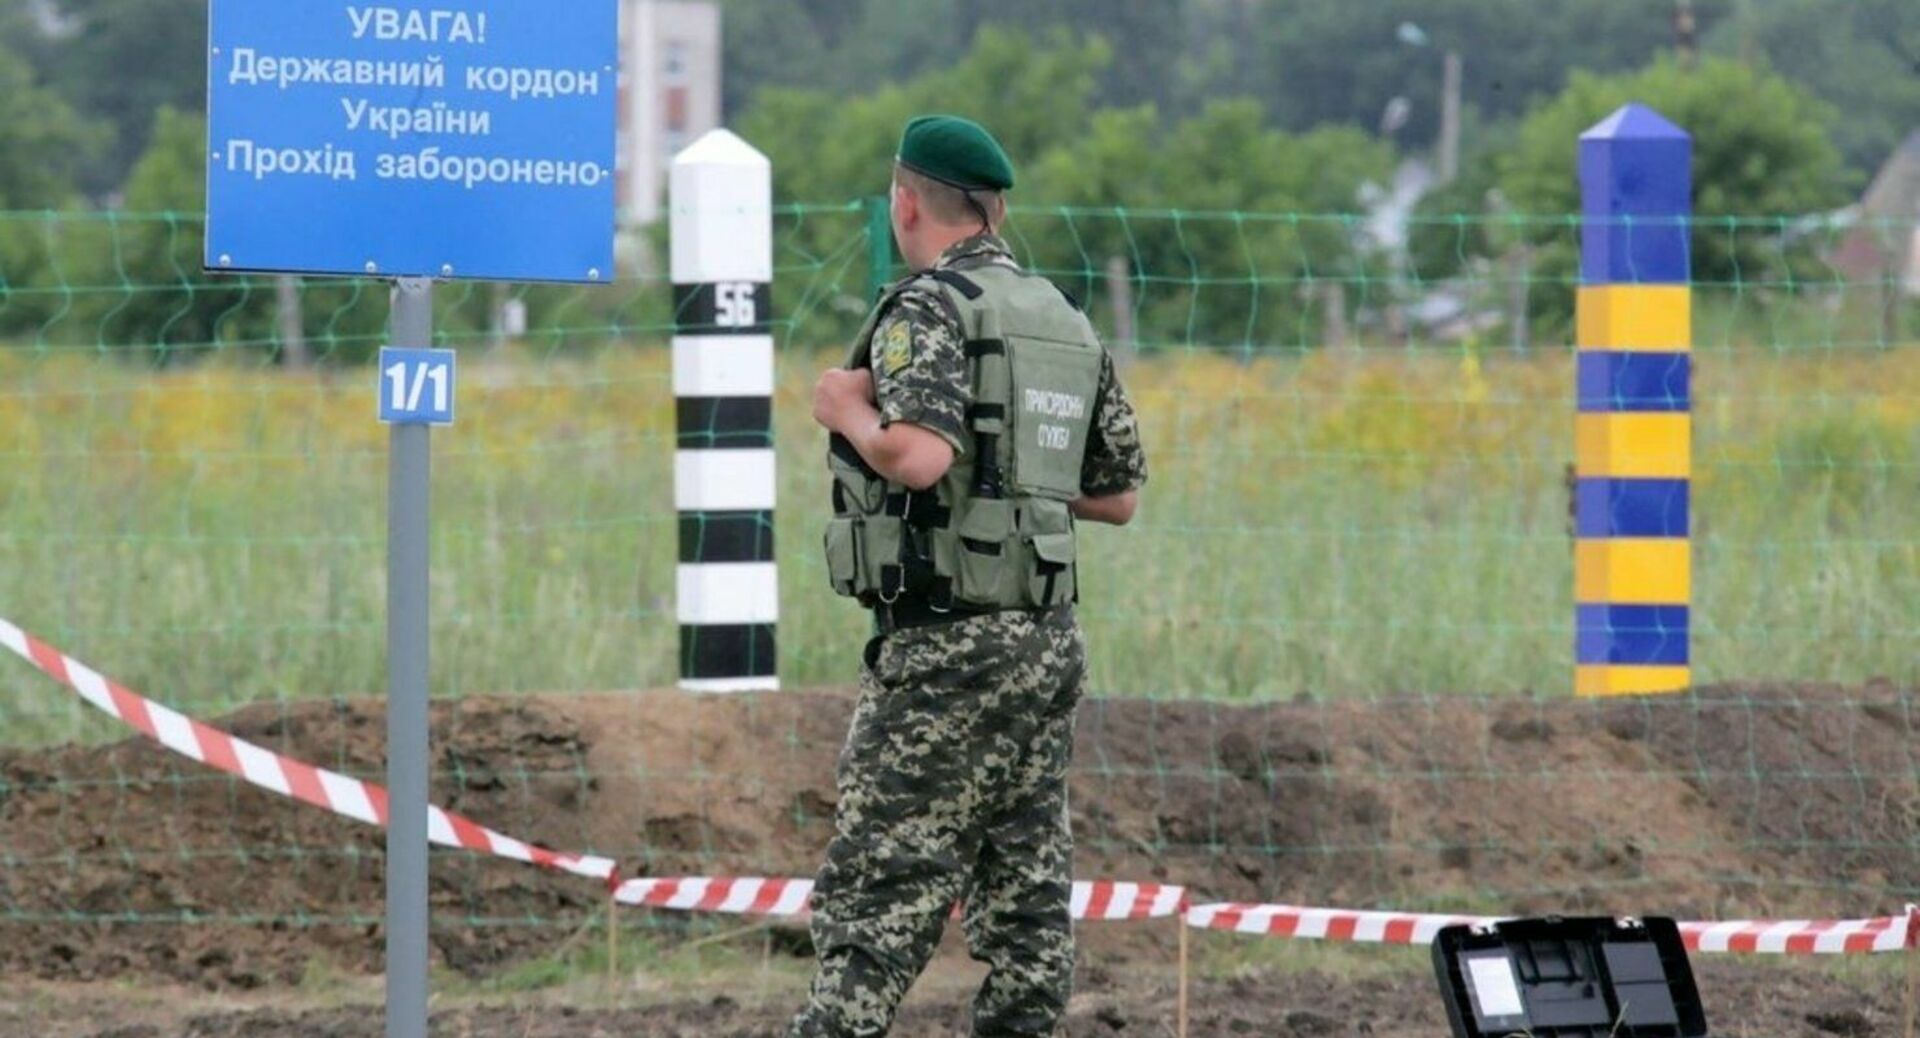 Как дела на границе с украиной